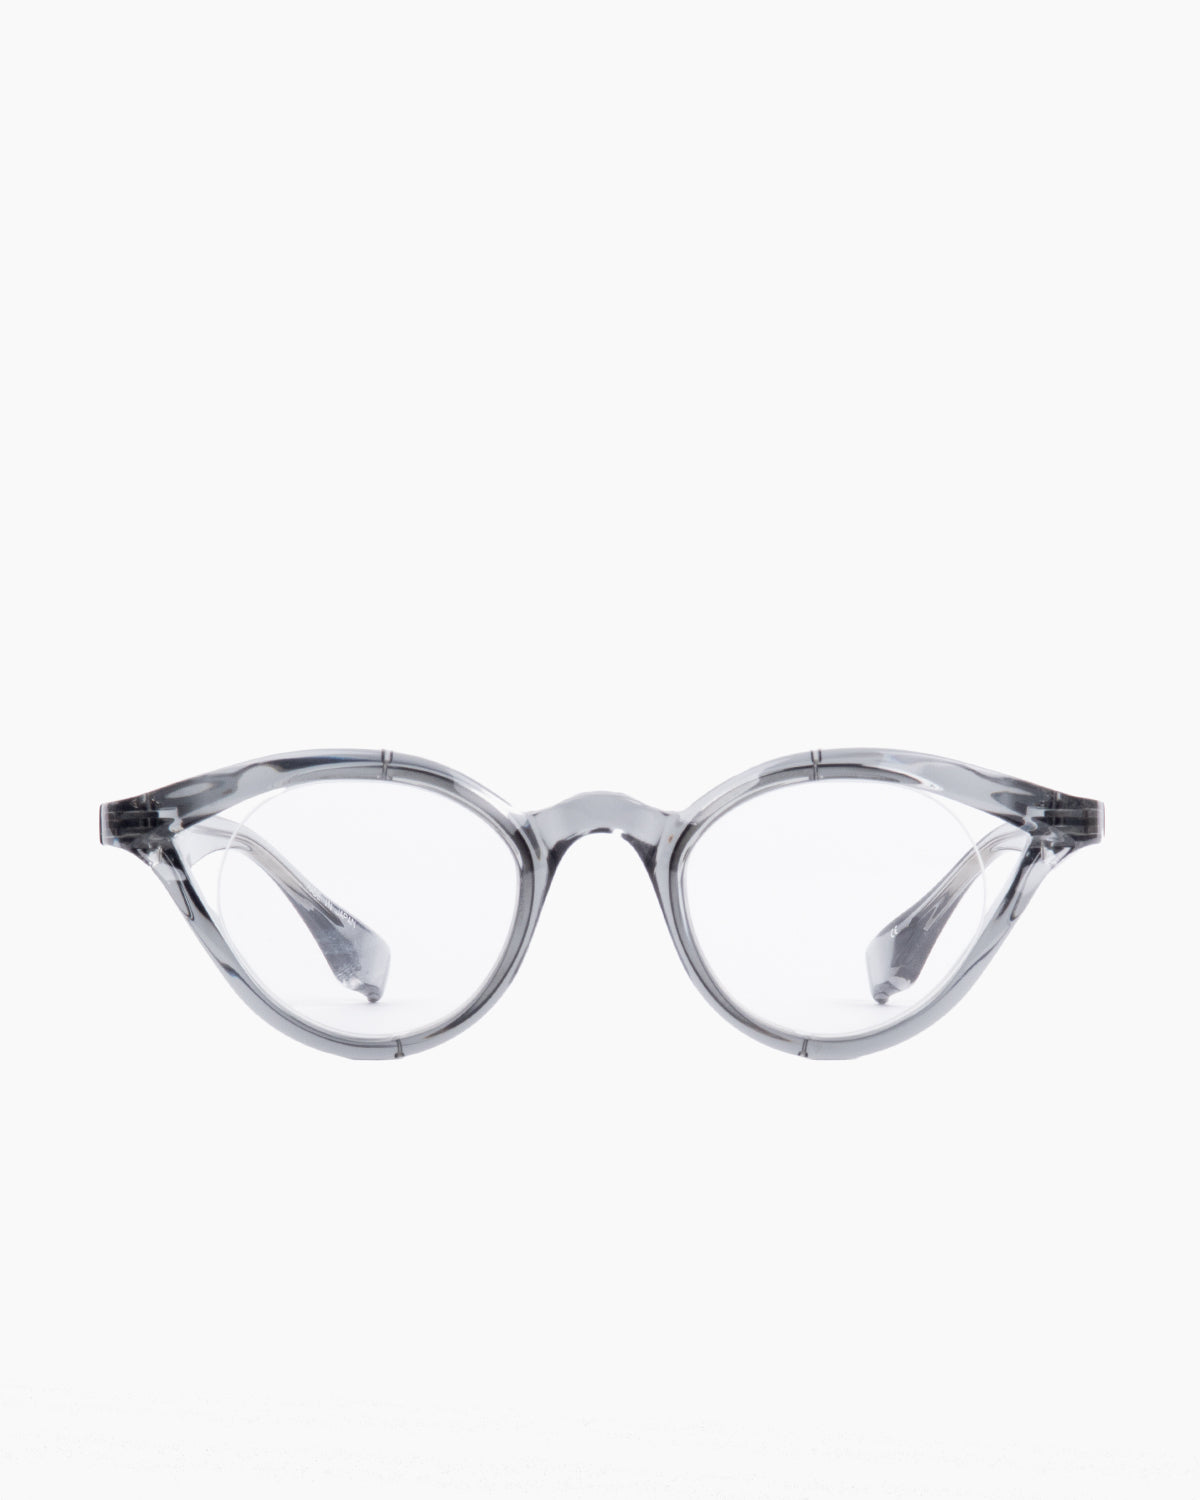 Factory 900 - RF140 - 493 | glasses bar